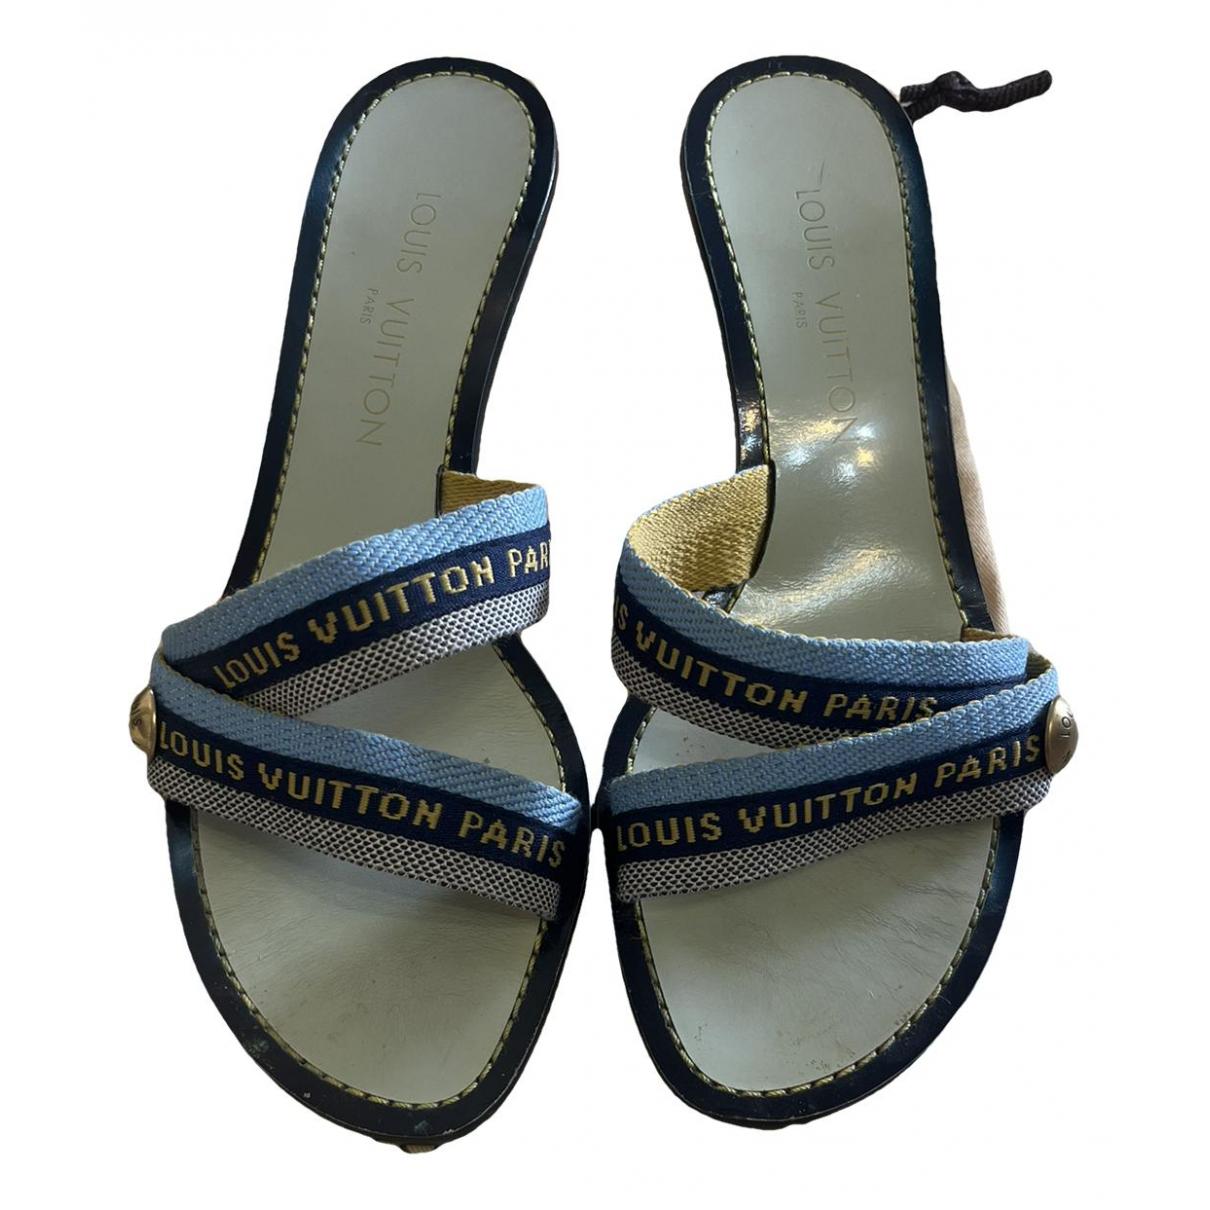 Louis Vuitton monogram flat sandals - 39 - 2010s second hand vintage – Lysis